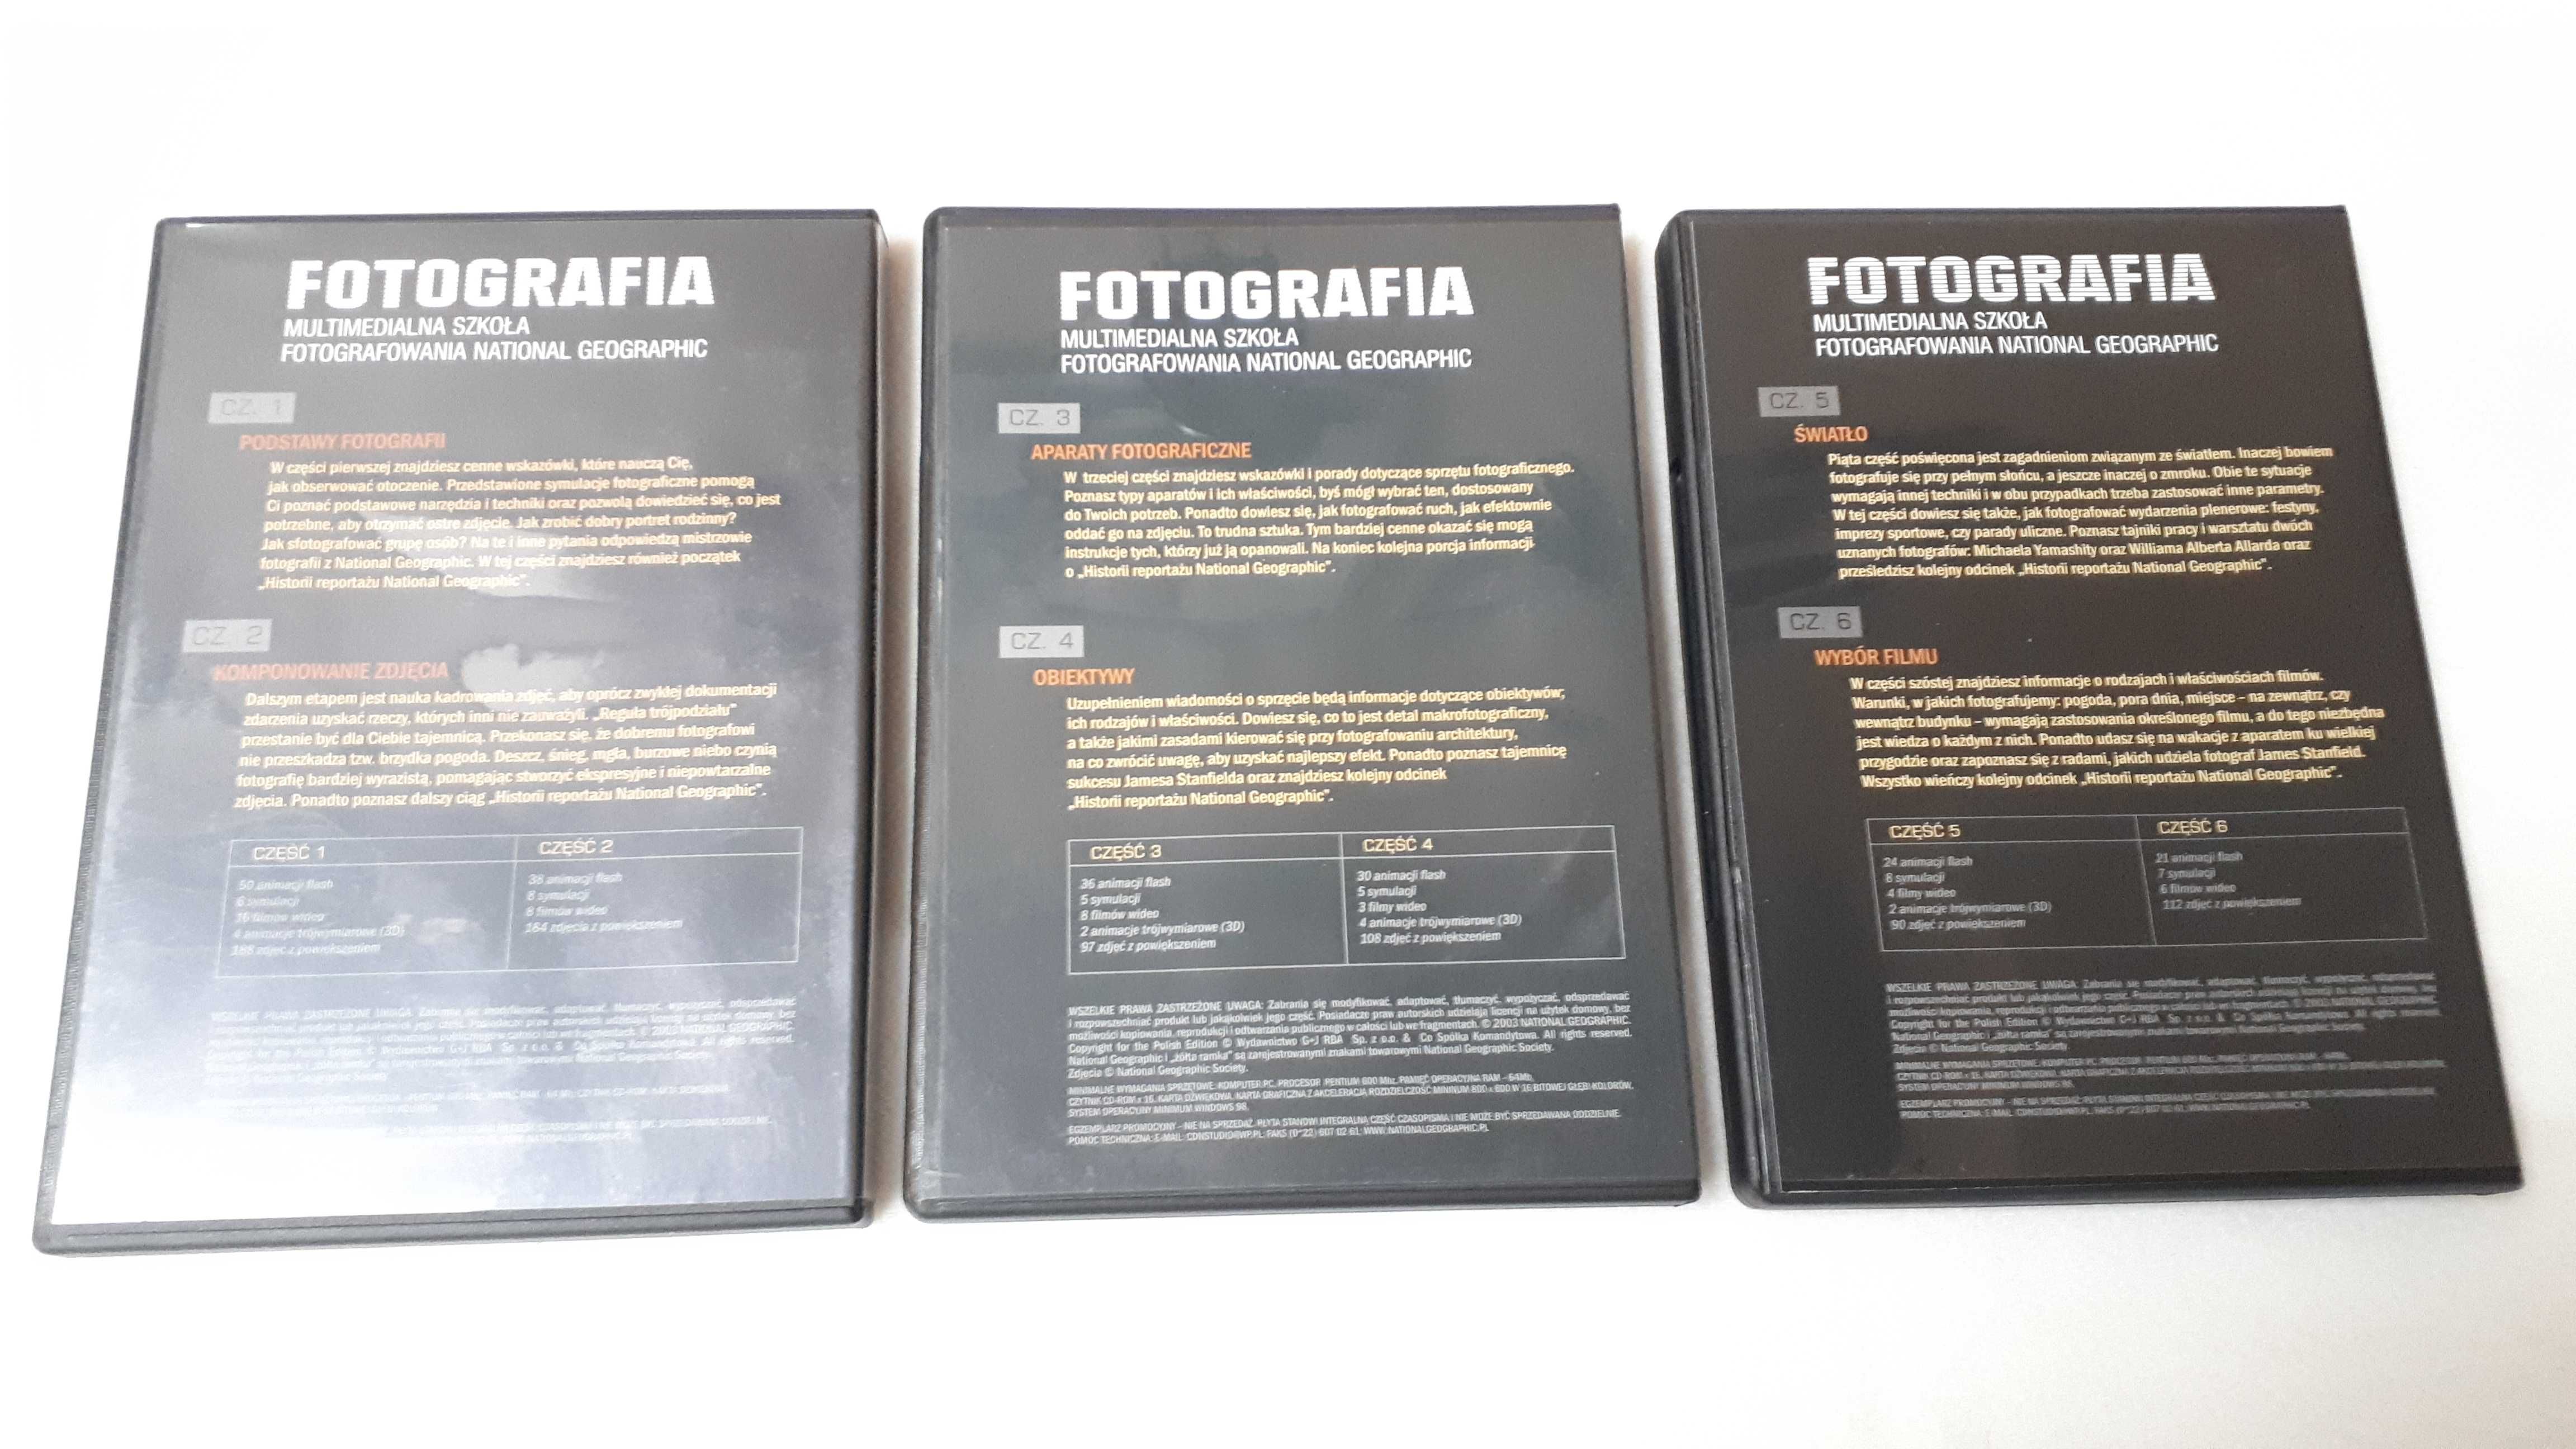 DVD Fotografia Multimedialna szkoła foto Nat.Geographic (3 płyty)